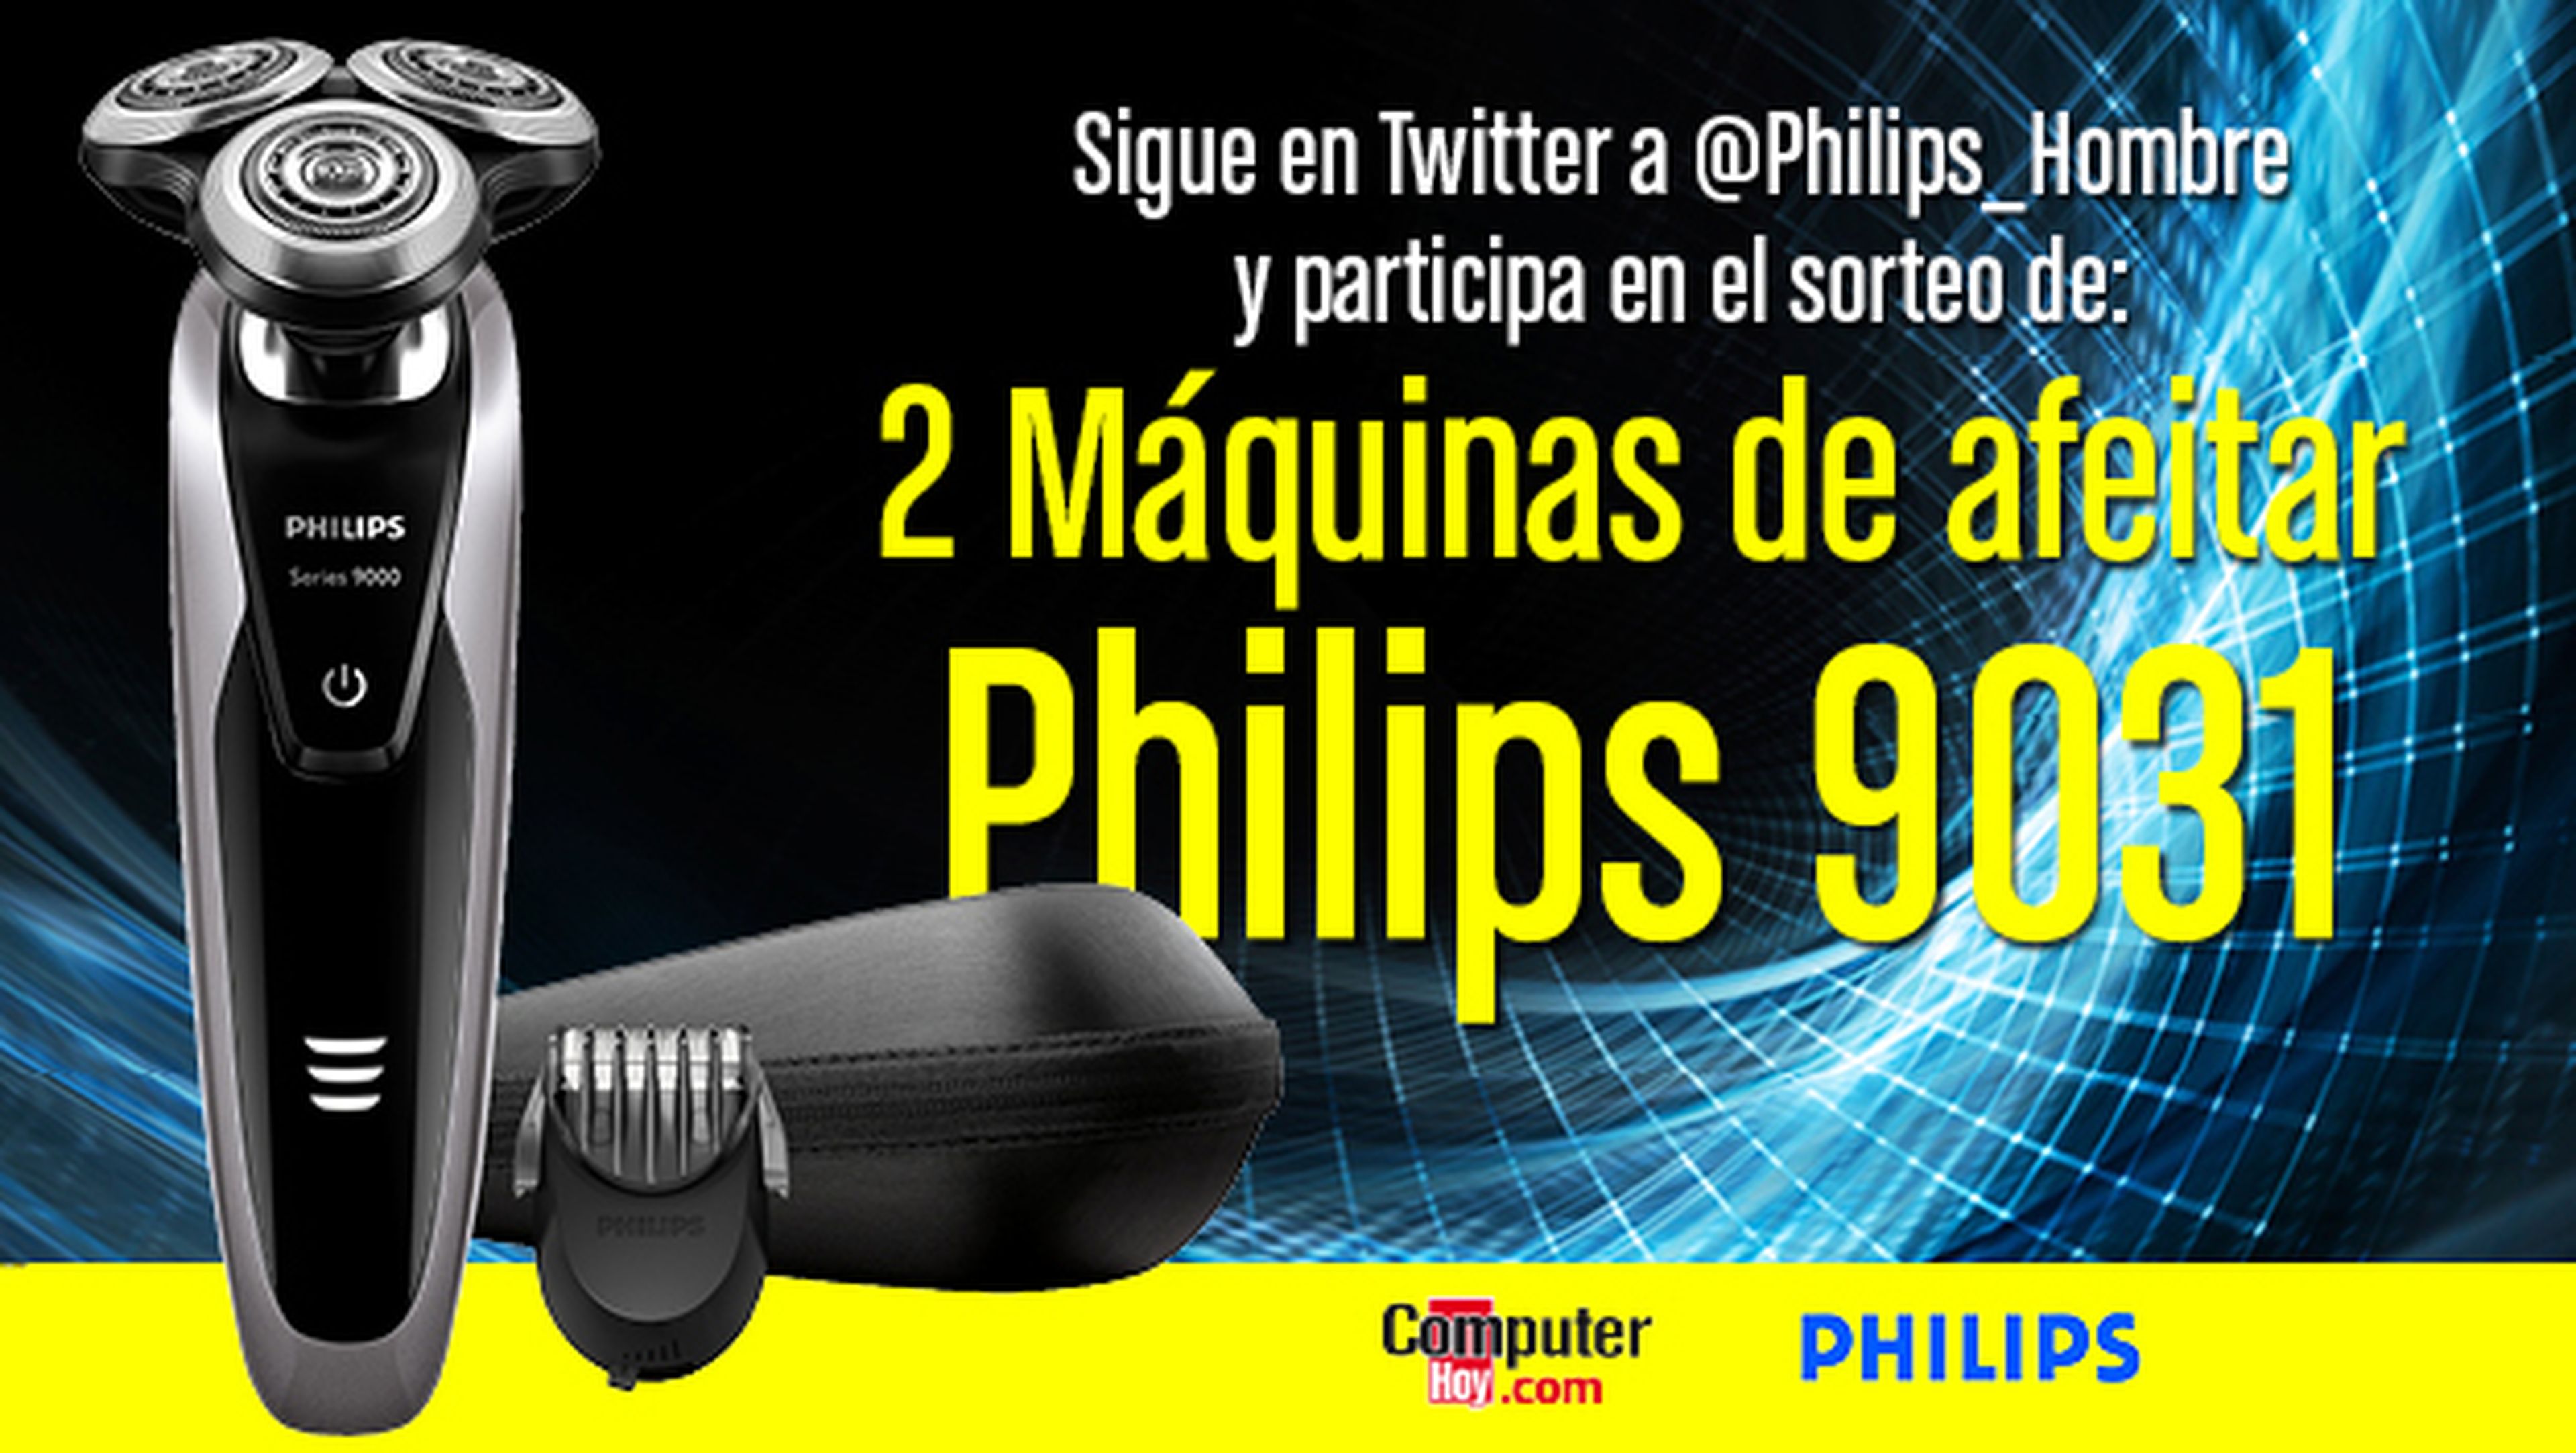 Philips reto espacial